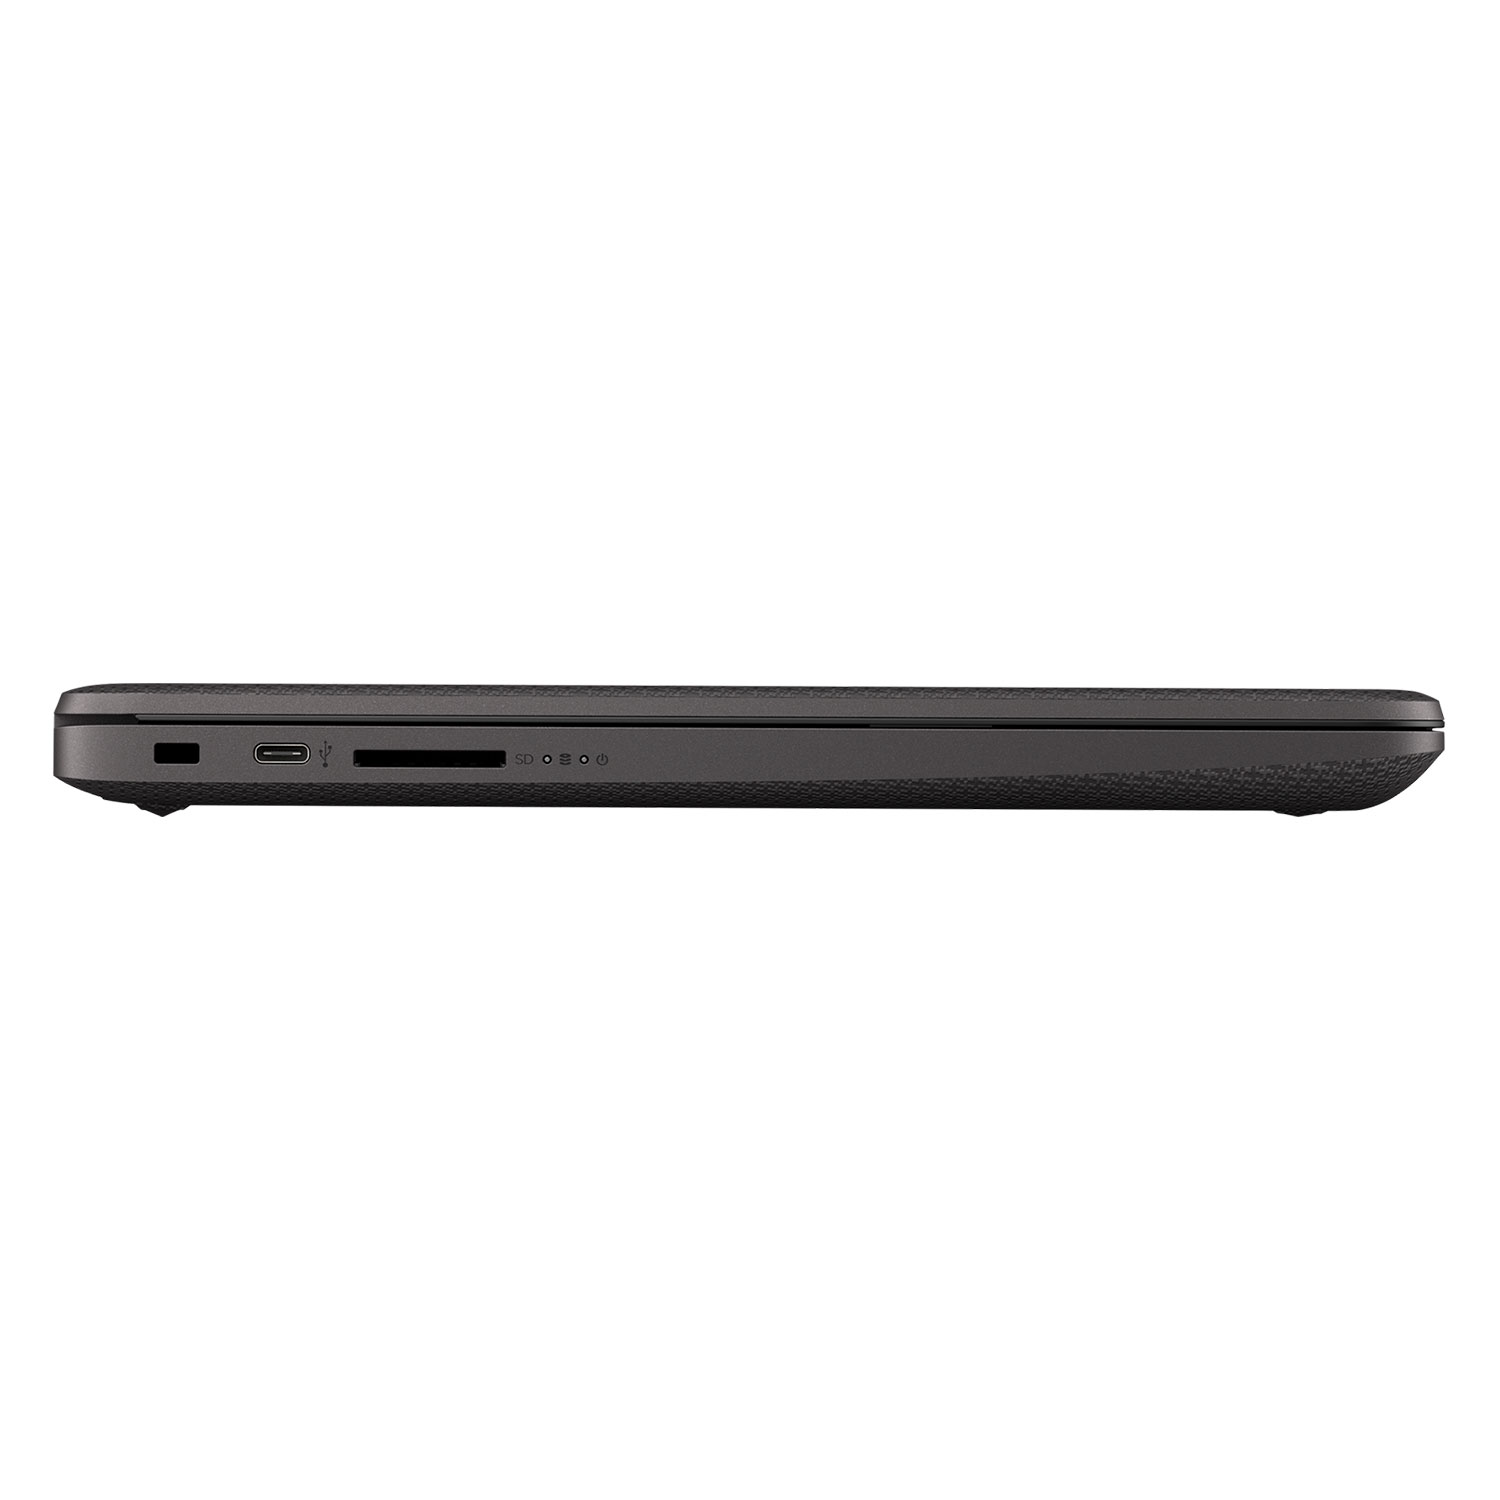 Notebook HP 15-GW0501LA 15.6" AMD 3020E 128GB SSD 4GB RAM + Capa + Mouse + Fone de Ouvido - Preto